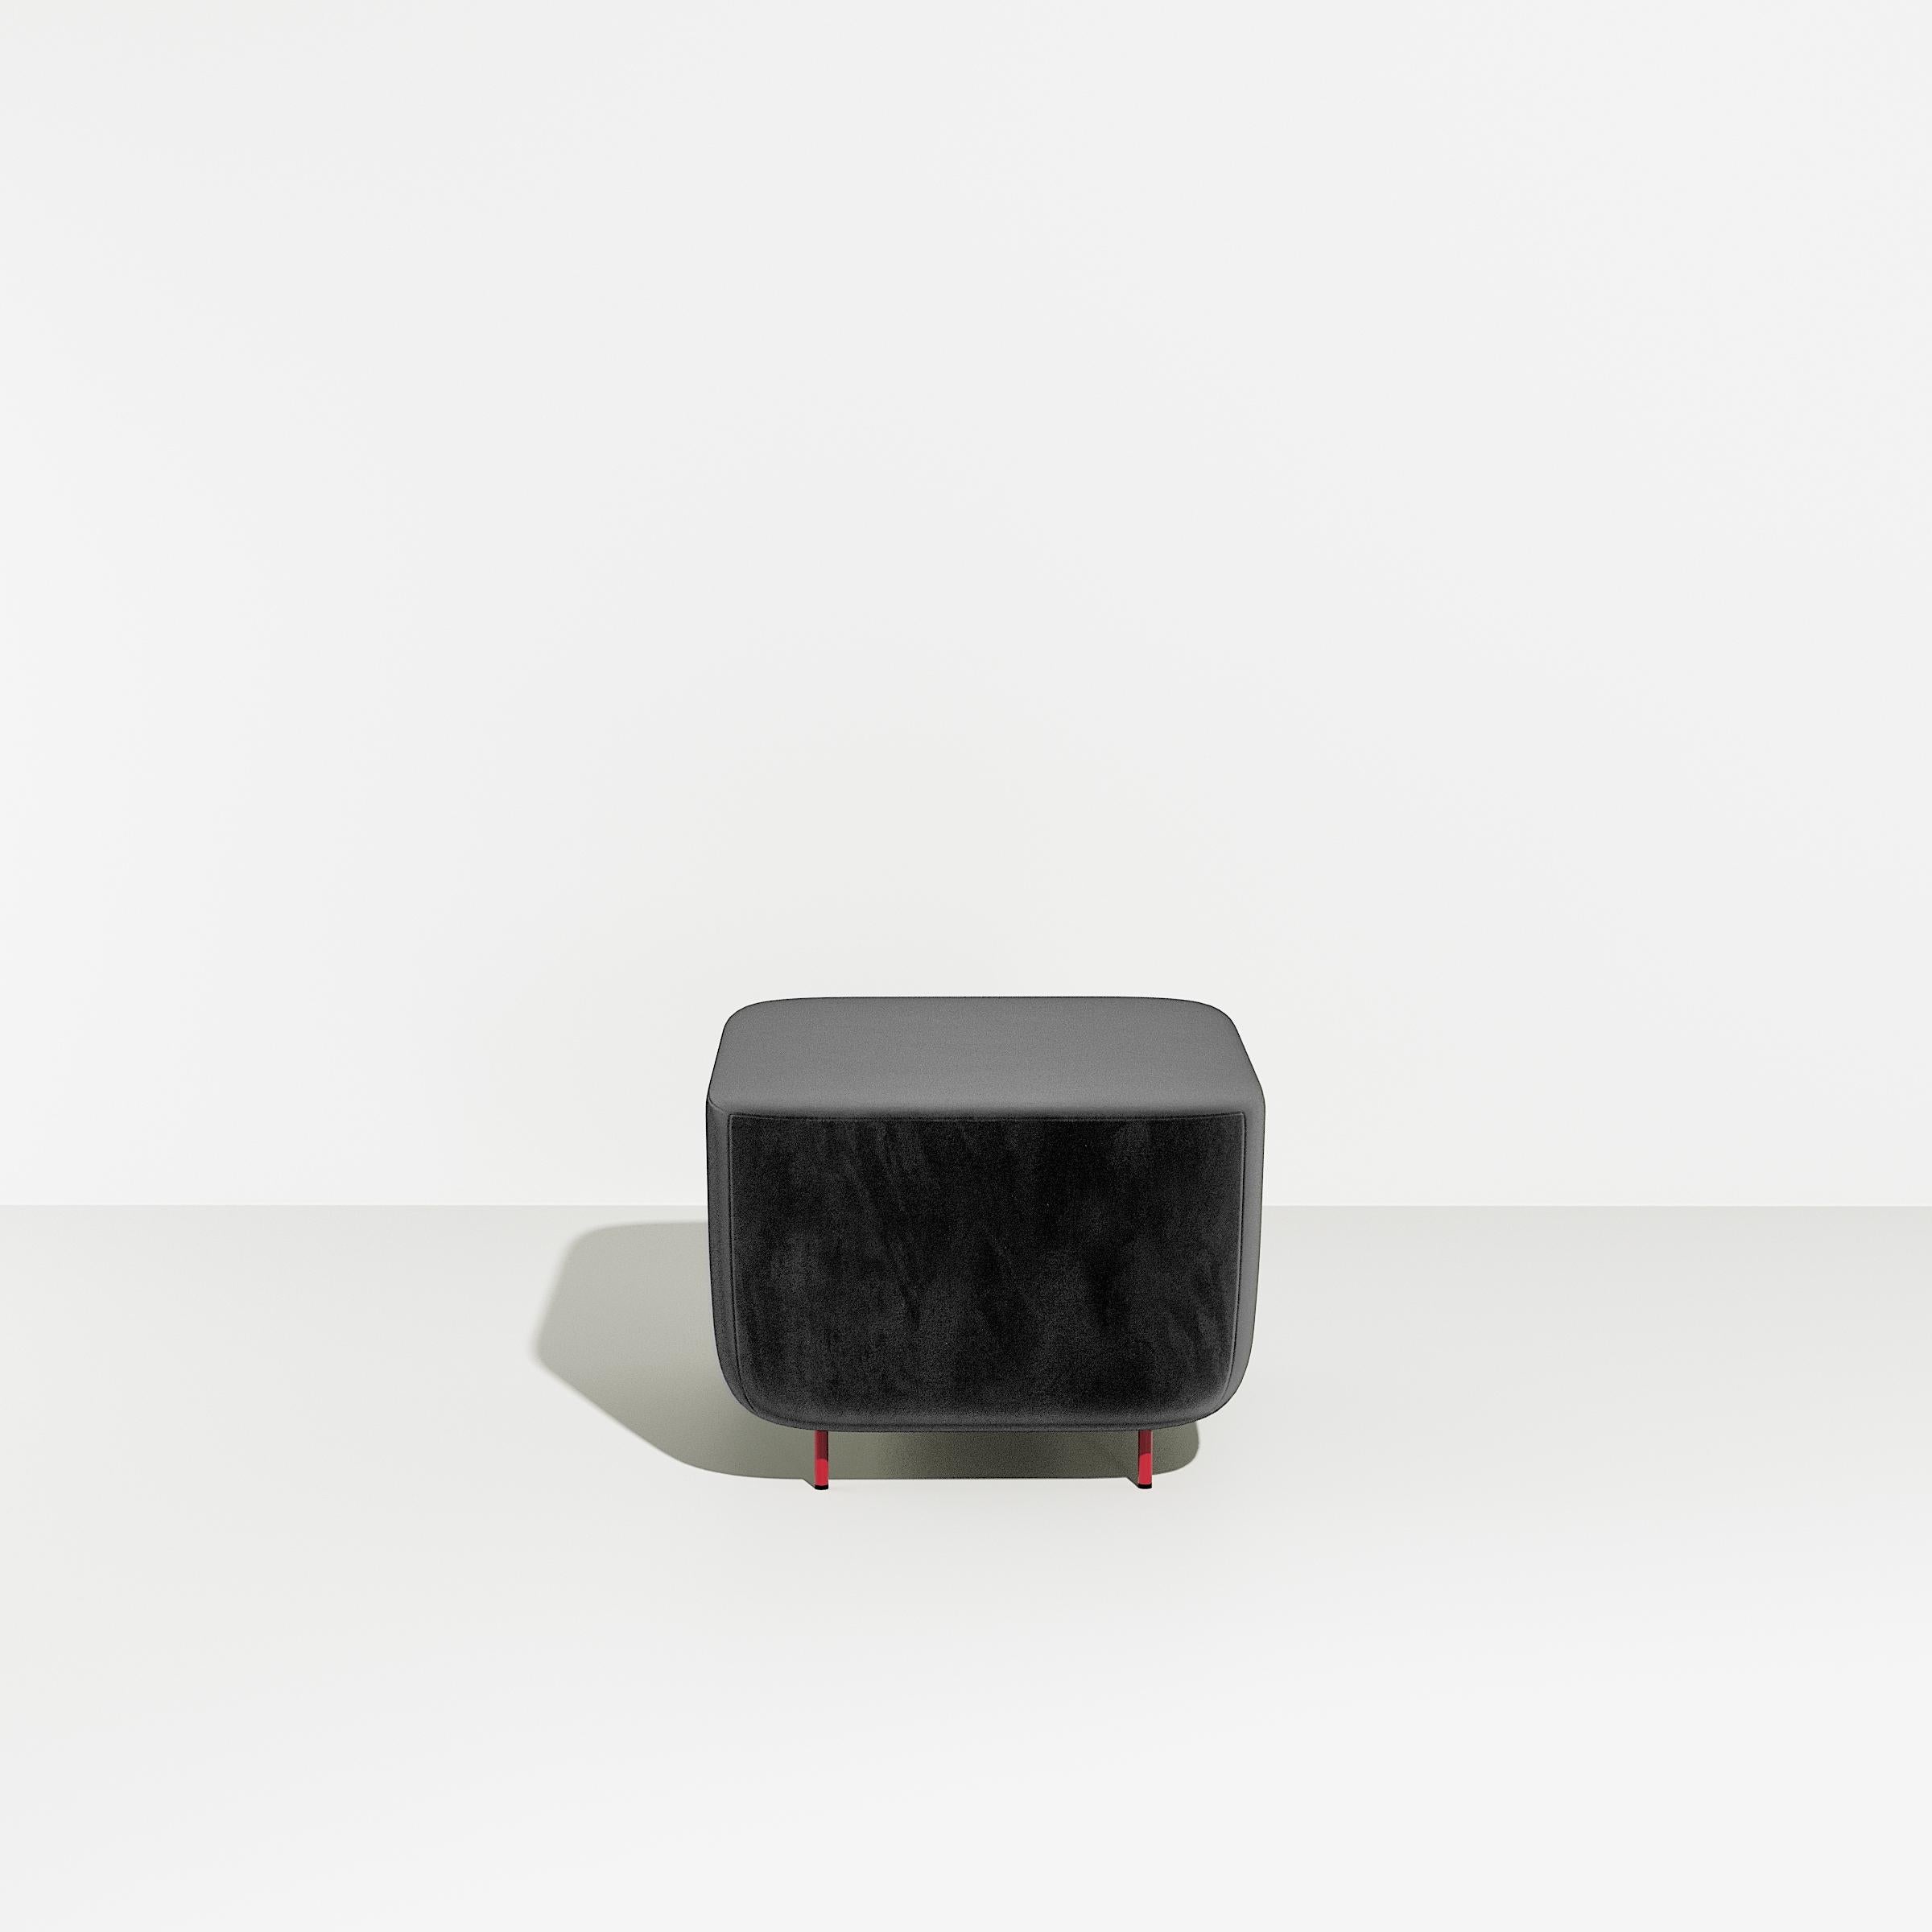 Petite Friture Petit tabouret Hoff en gris-noir par Morten & Jona, 2015

Hoff, créée par le duo de designers Morten & Jonas, est une collection de deux tabourets et de deux fauteuils modulaires. Ils peuvent être combinés pour former un canapé ainsi